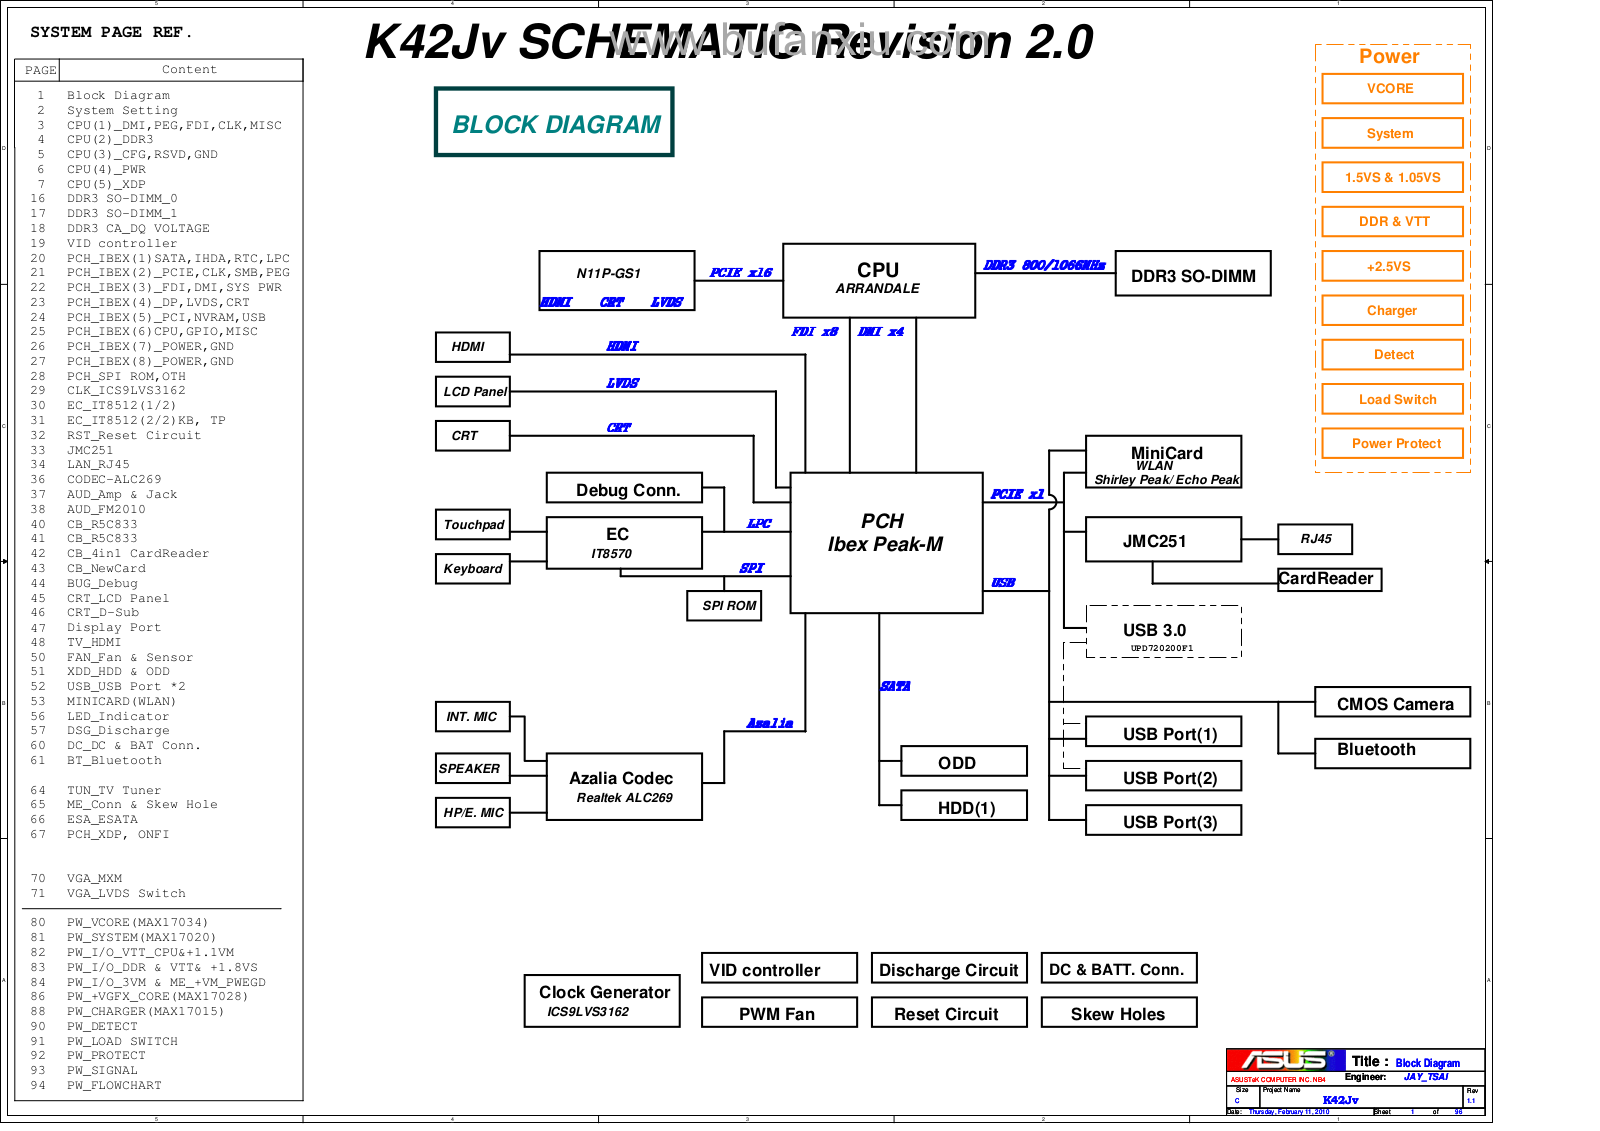 Asus K42Jv MB 2.0 Schematics